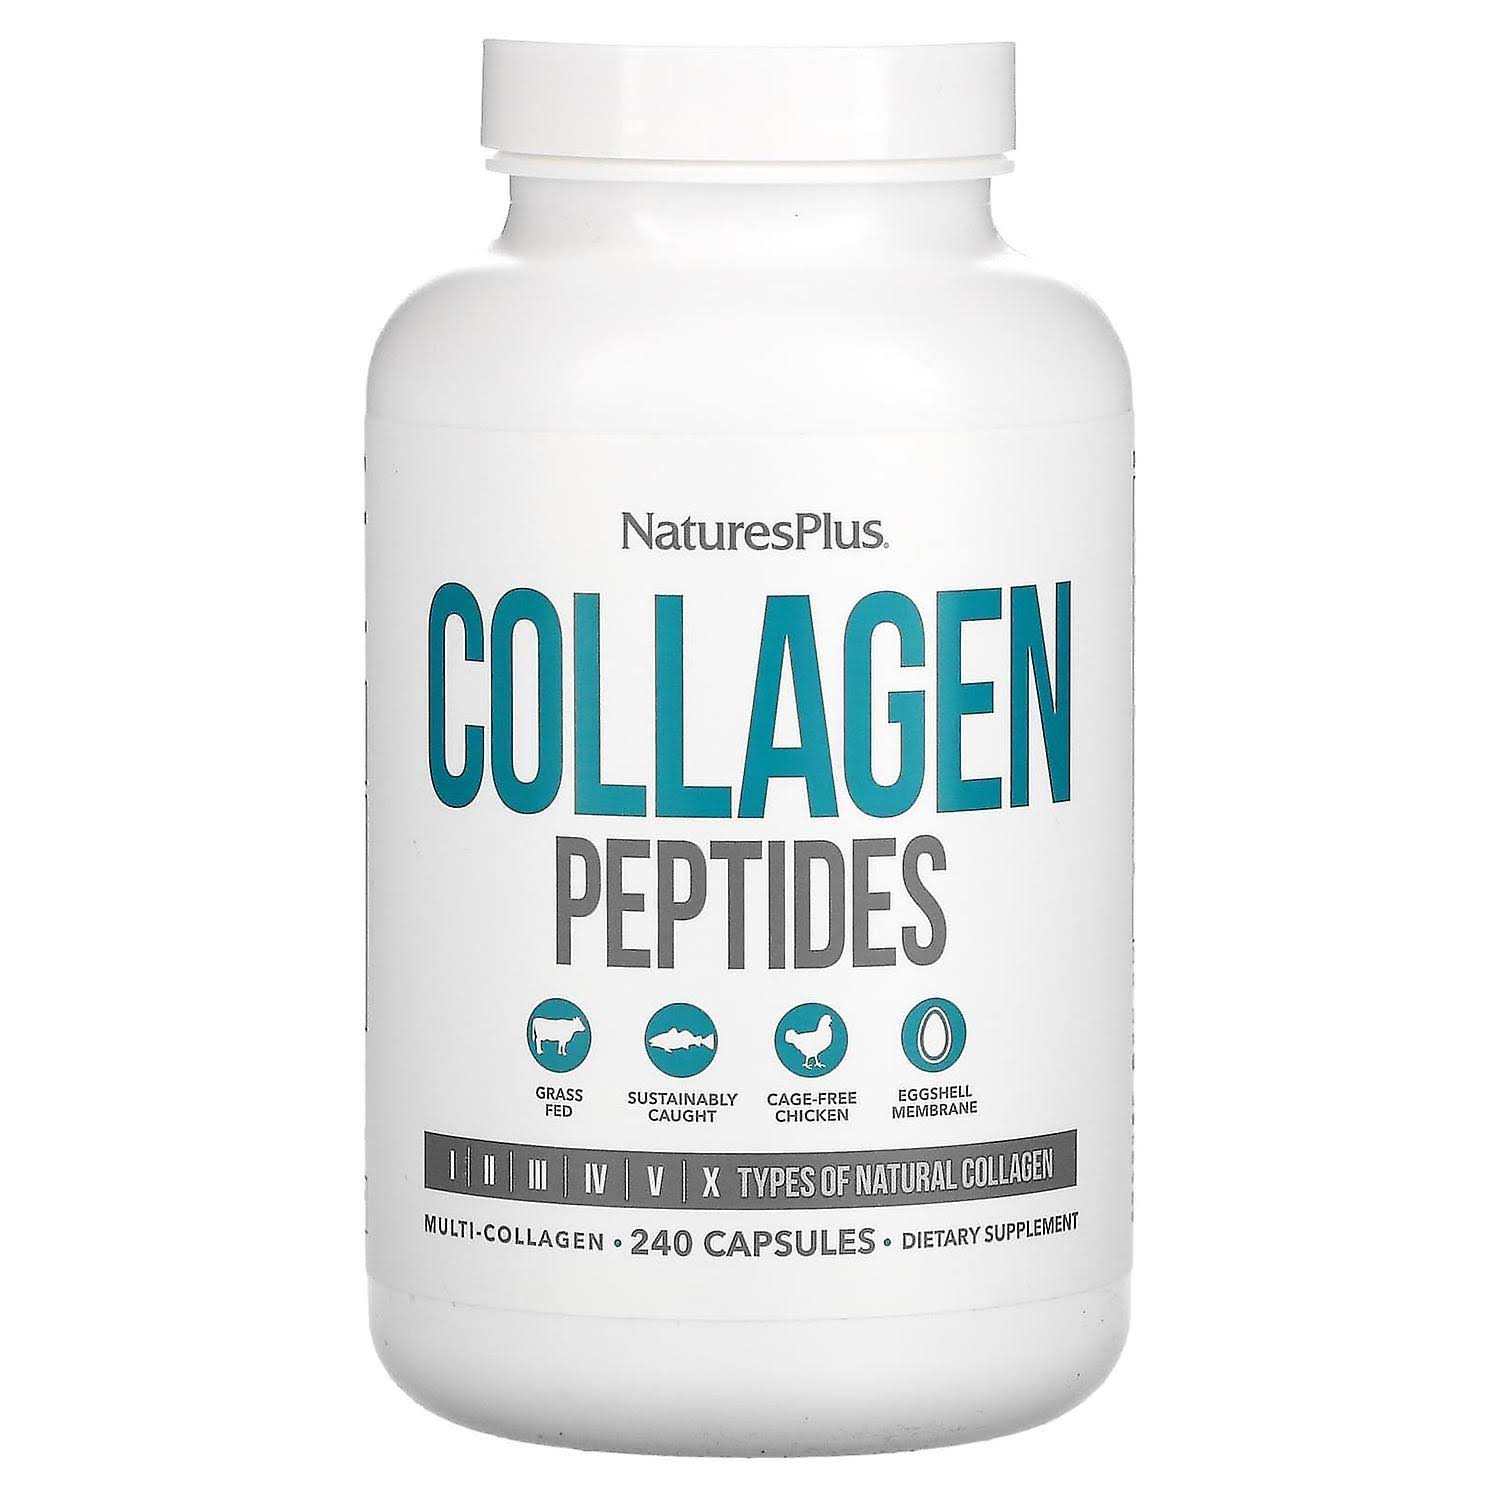 NaturesPlus Collagen Peptides 240 Capsules